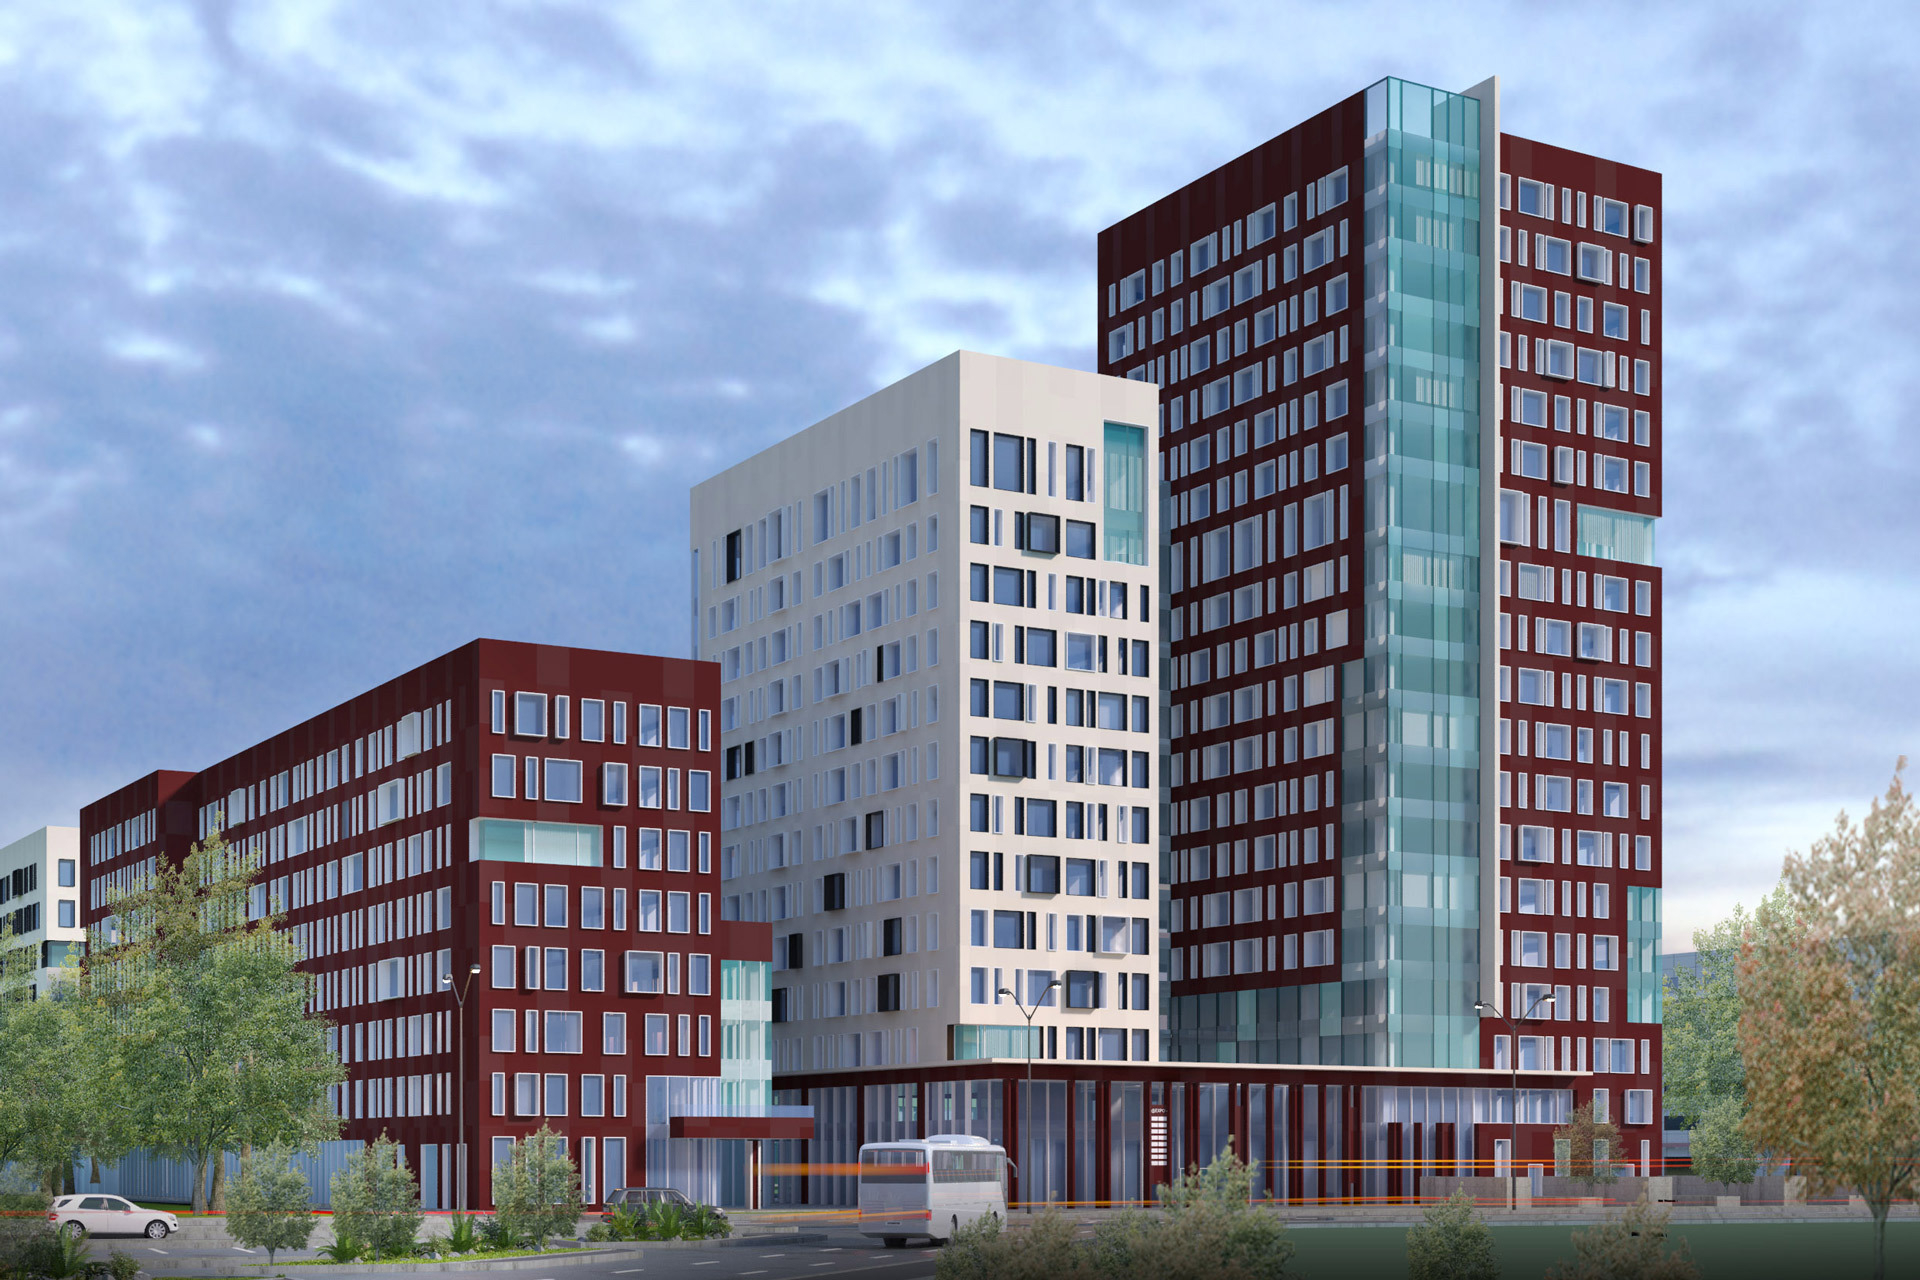 Dezvoltatorul imobiliar belgian Atenor a semnat un contract pentru vânzarea complexului de birouri @Expo din zona Expoziţiei din Bucureşti către Adventum Group. Tranzacţia ar putea fi finalizată în T1 2023